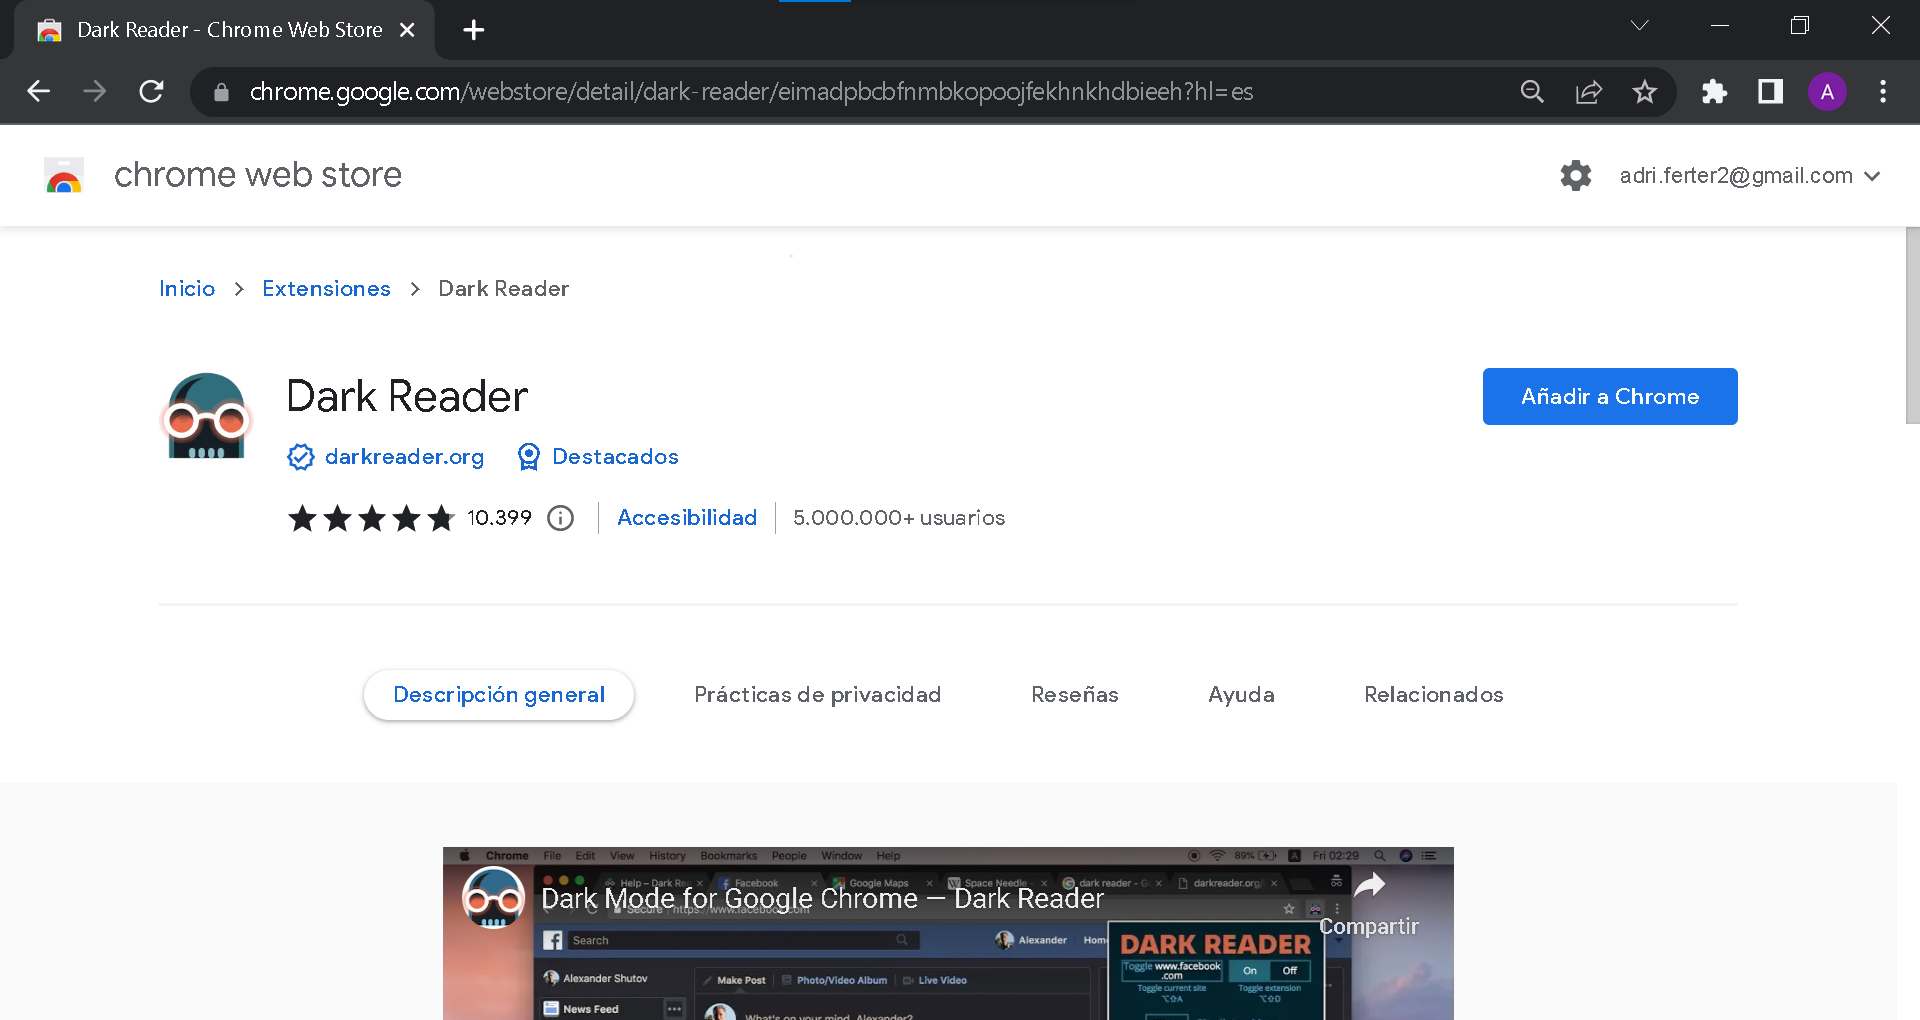 Dark Reader en Google Chrome Store